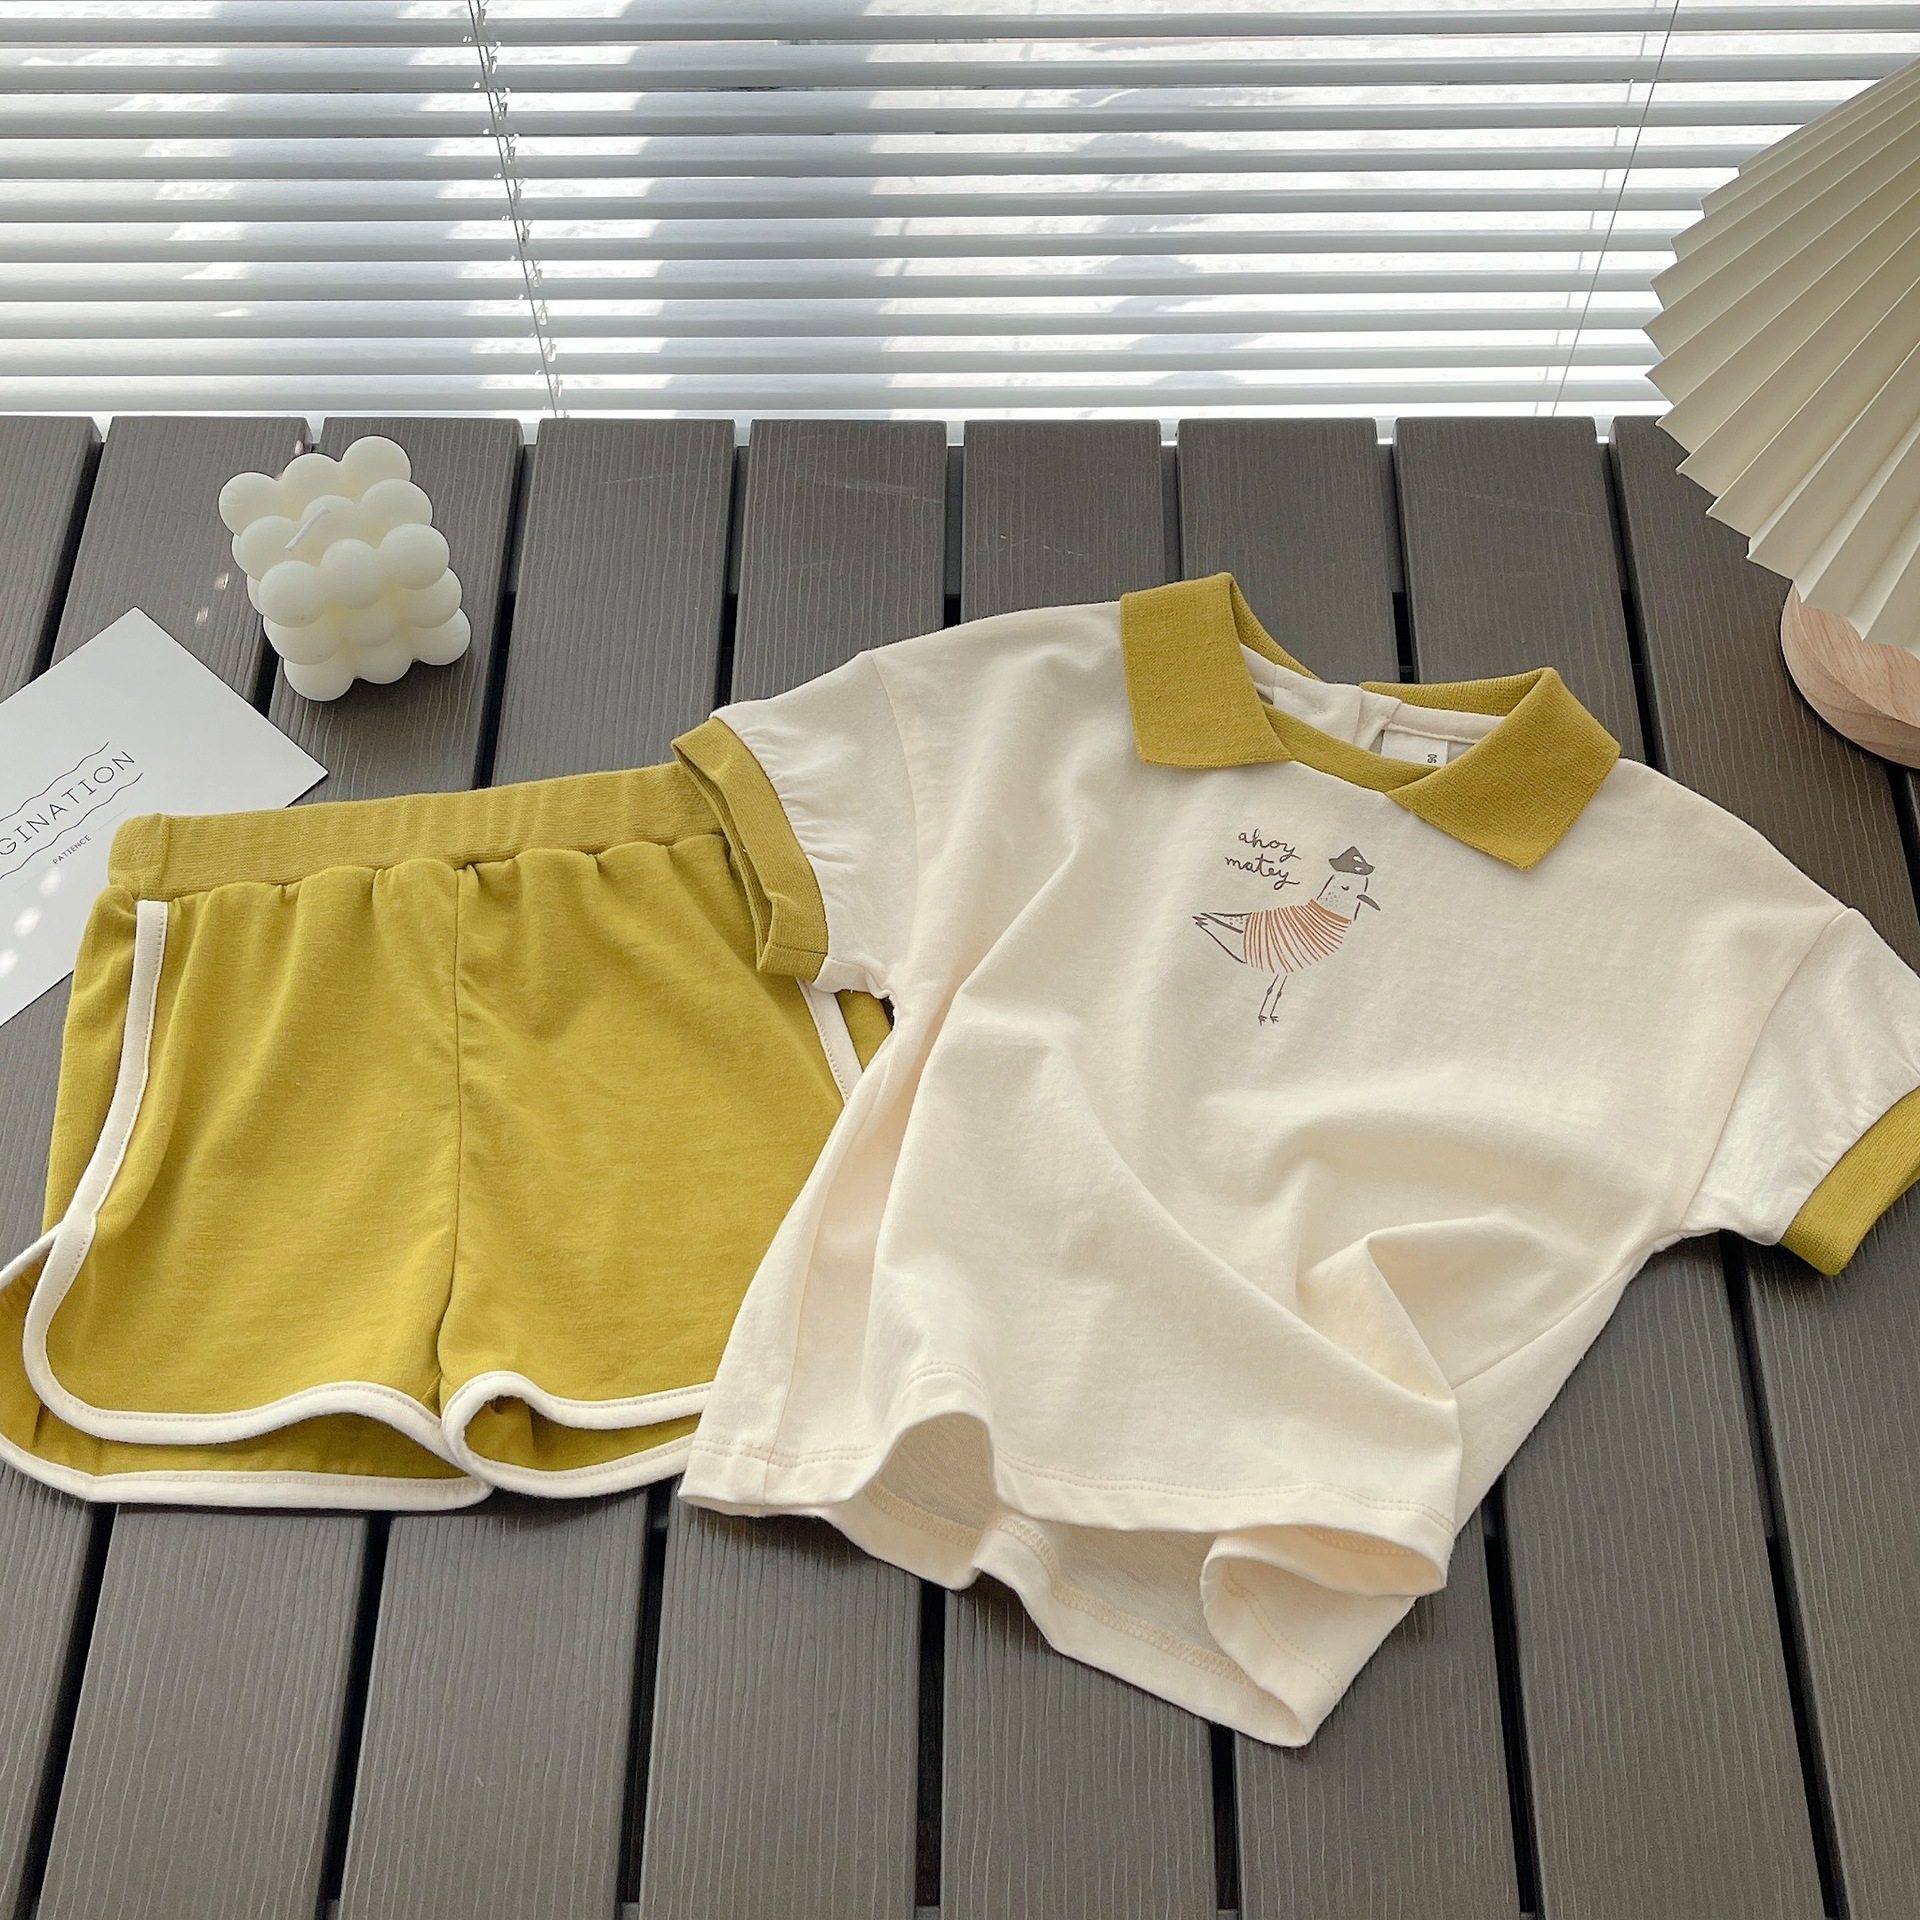 Children's Short-Sleeved Suit 22 Summer Baby Printed T-shirt Korean Style Sweater Children's Sportswear Children's Beach Suit Fashion